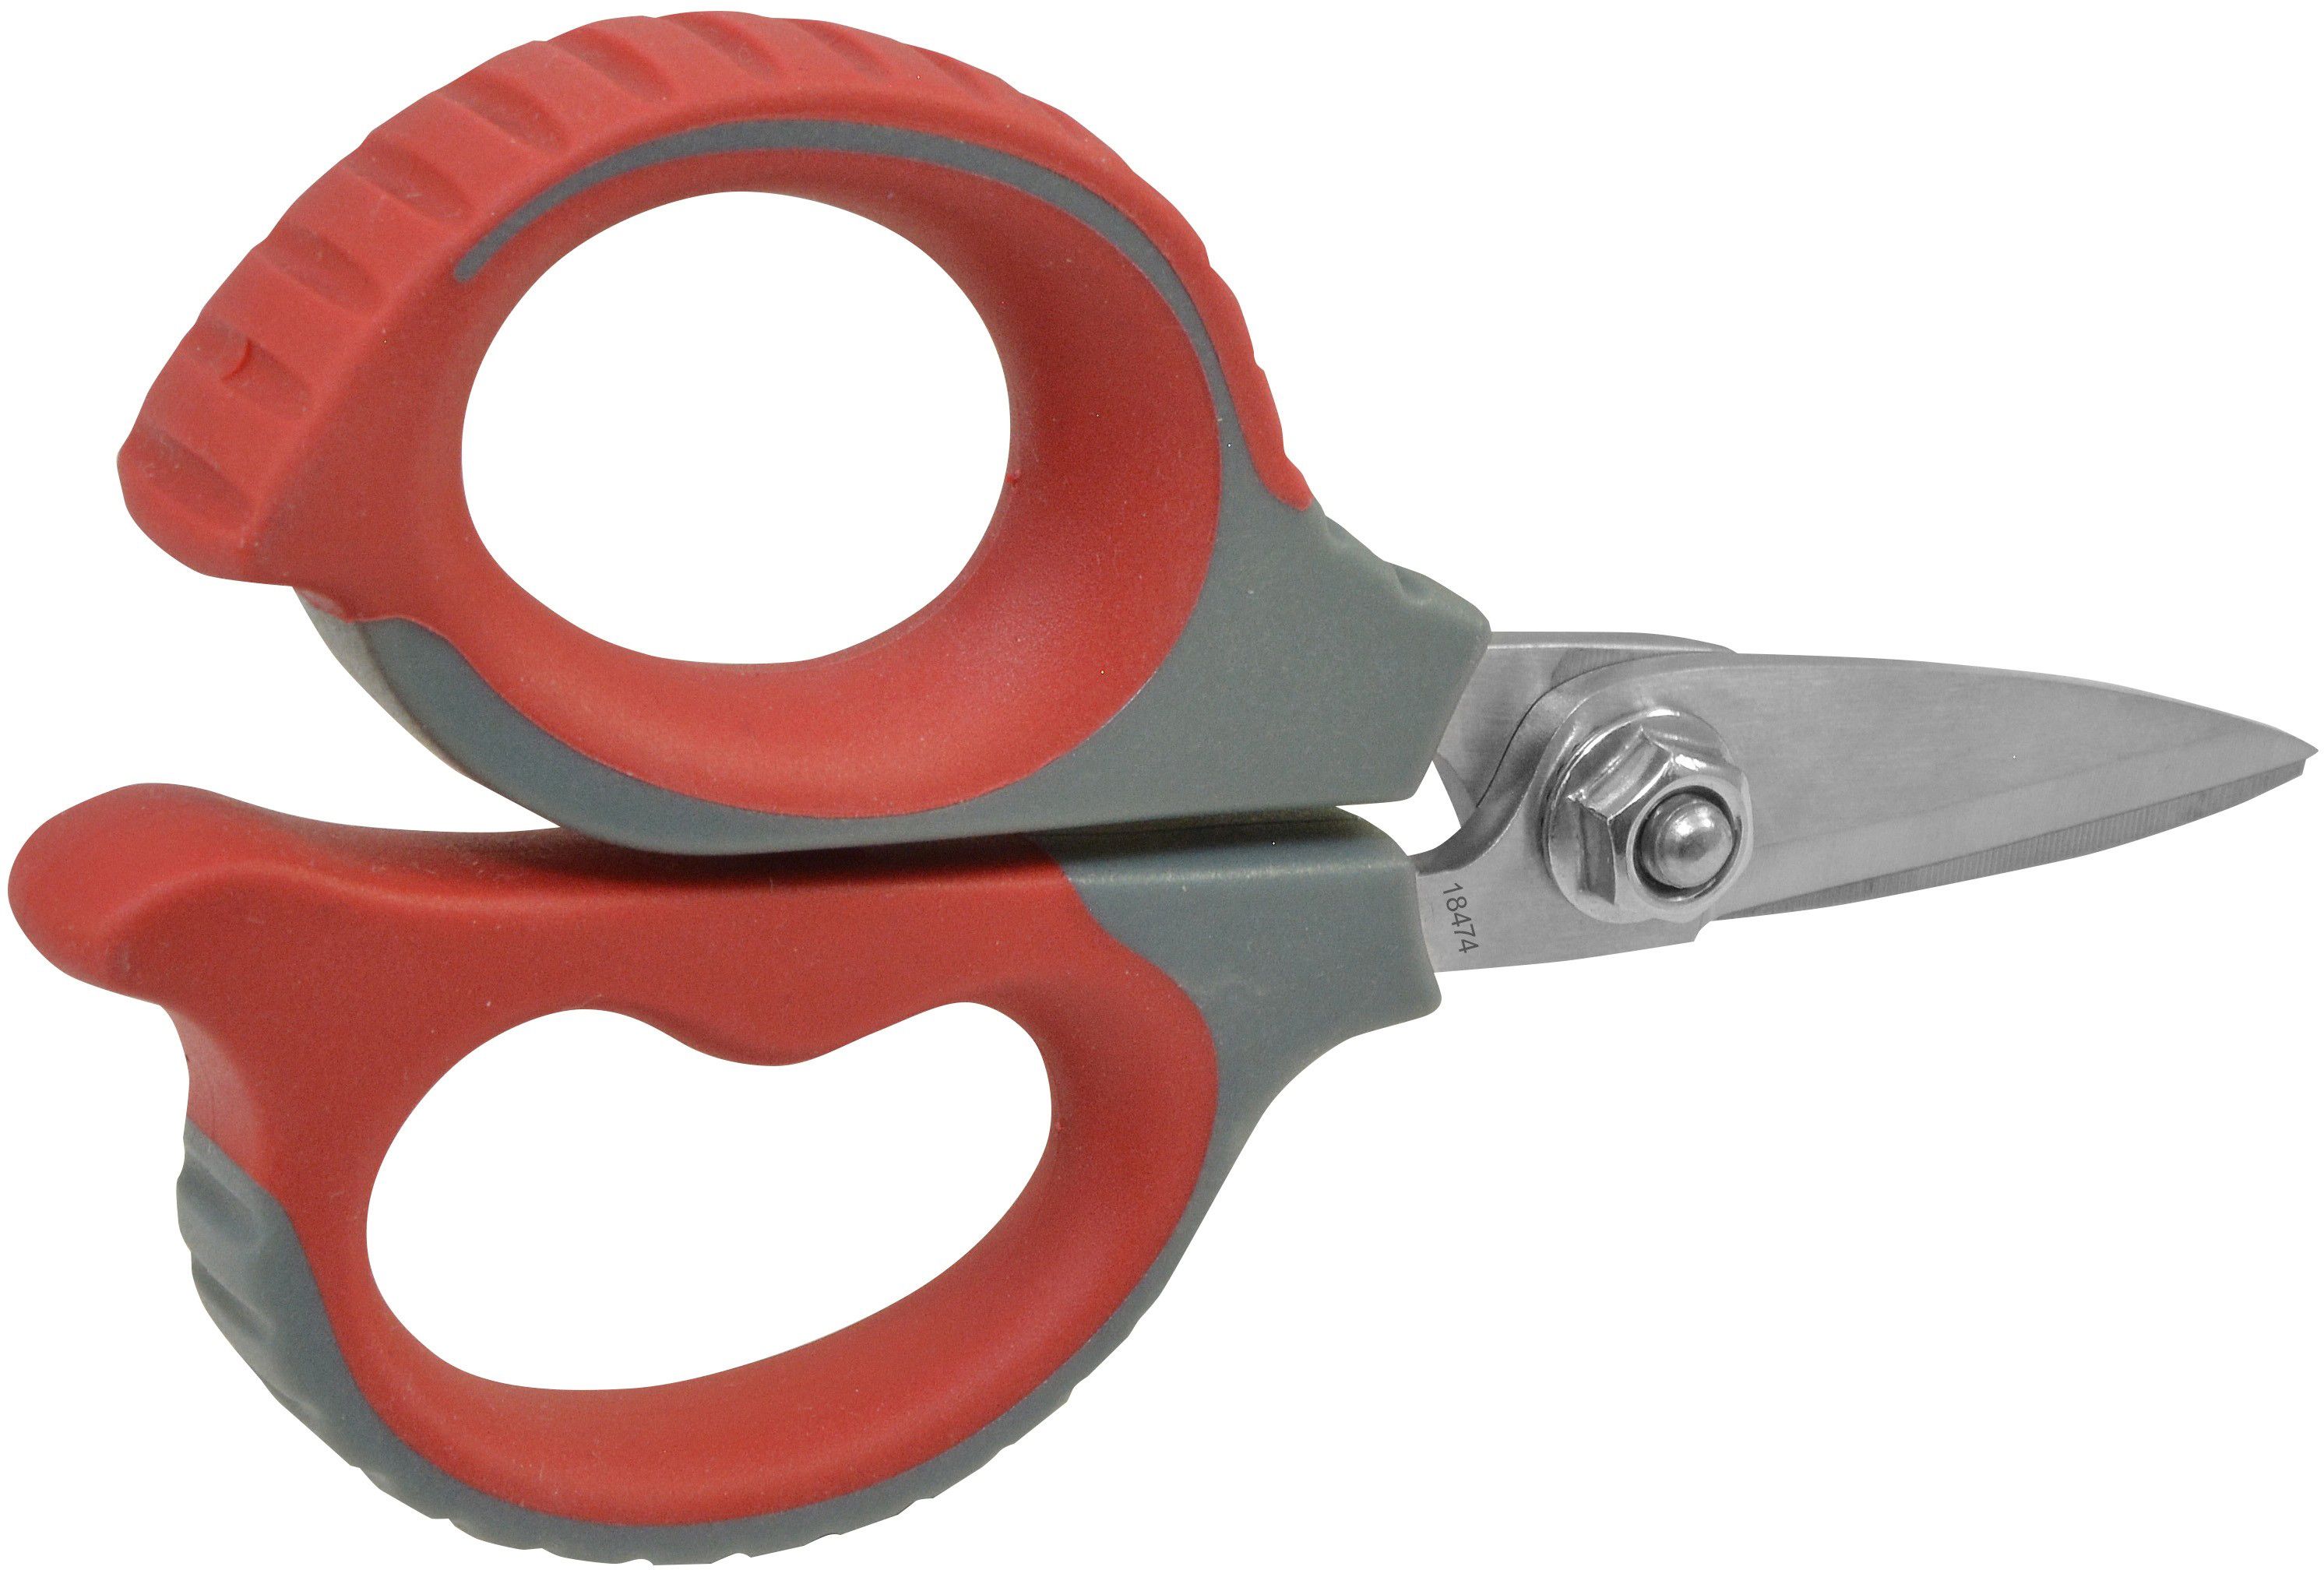 Clauss 12700 Electricians Scissors,Ambidextrous